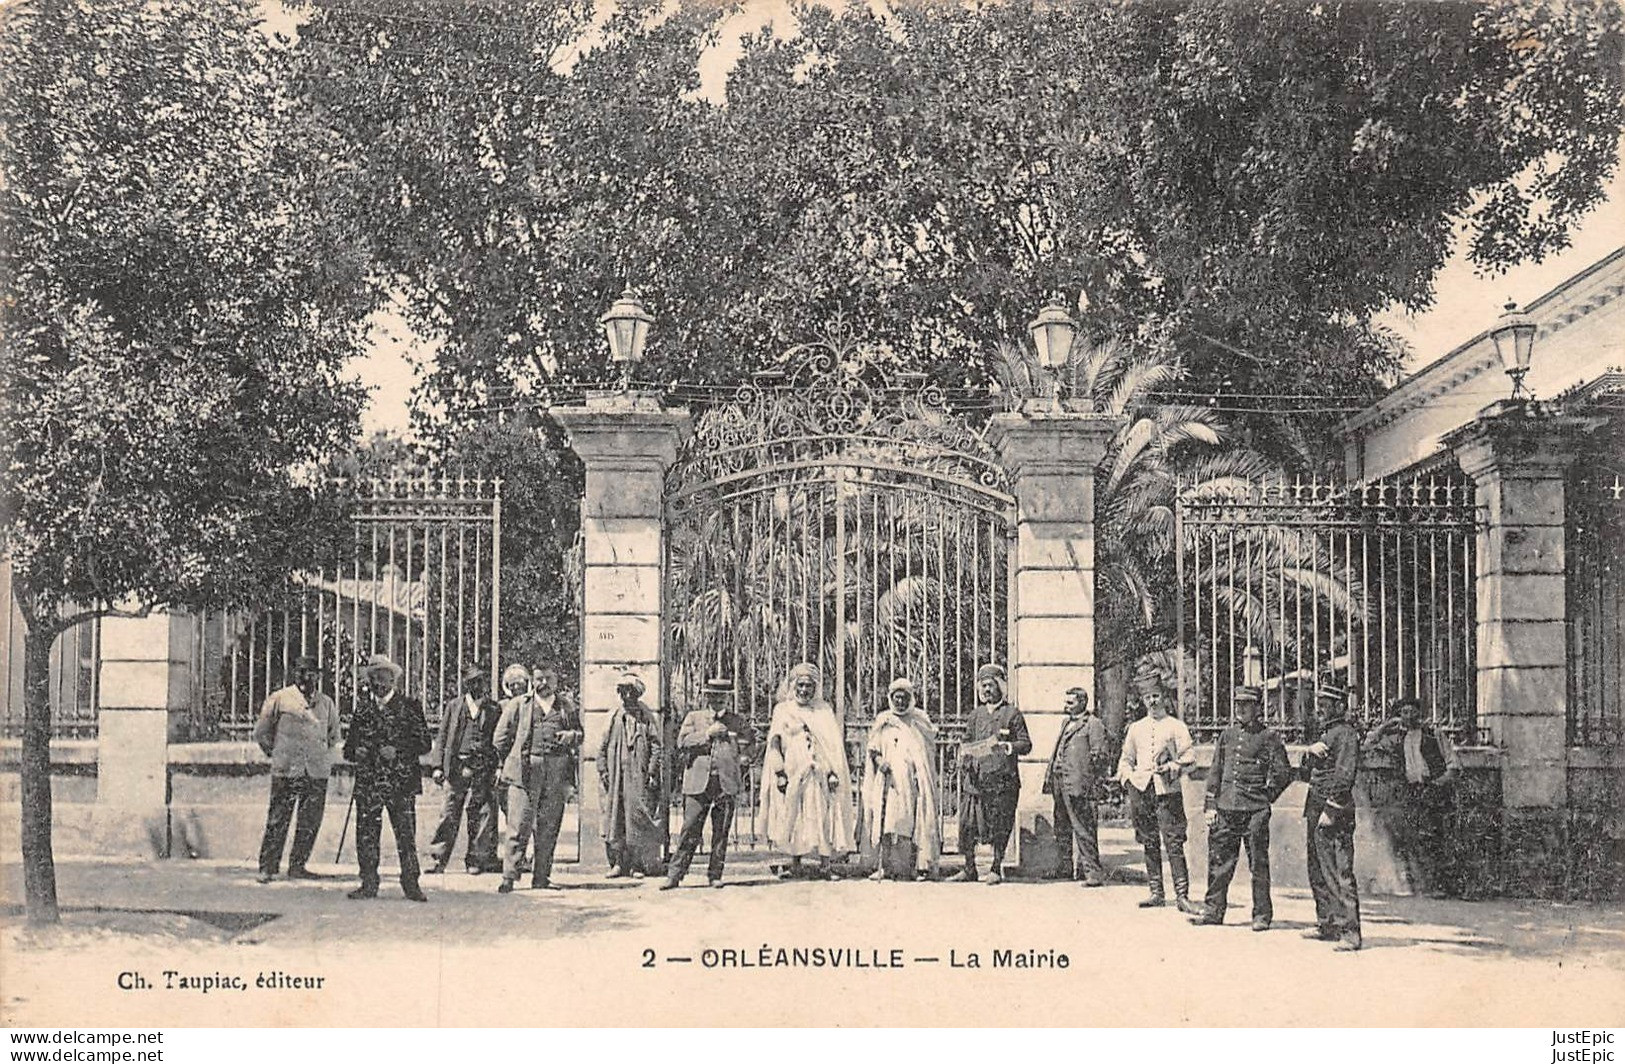 Algérie / Orléansville / Chlef / El-Asnam - La Mairie - Éditeur Ch. Taupiac - Année 1908 - Timbre Semeuse 10c Rouge CPA - Chlef (Orléansville)